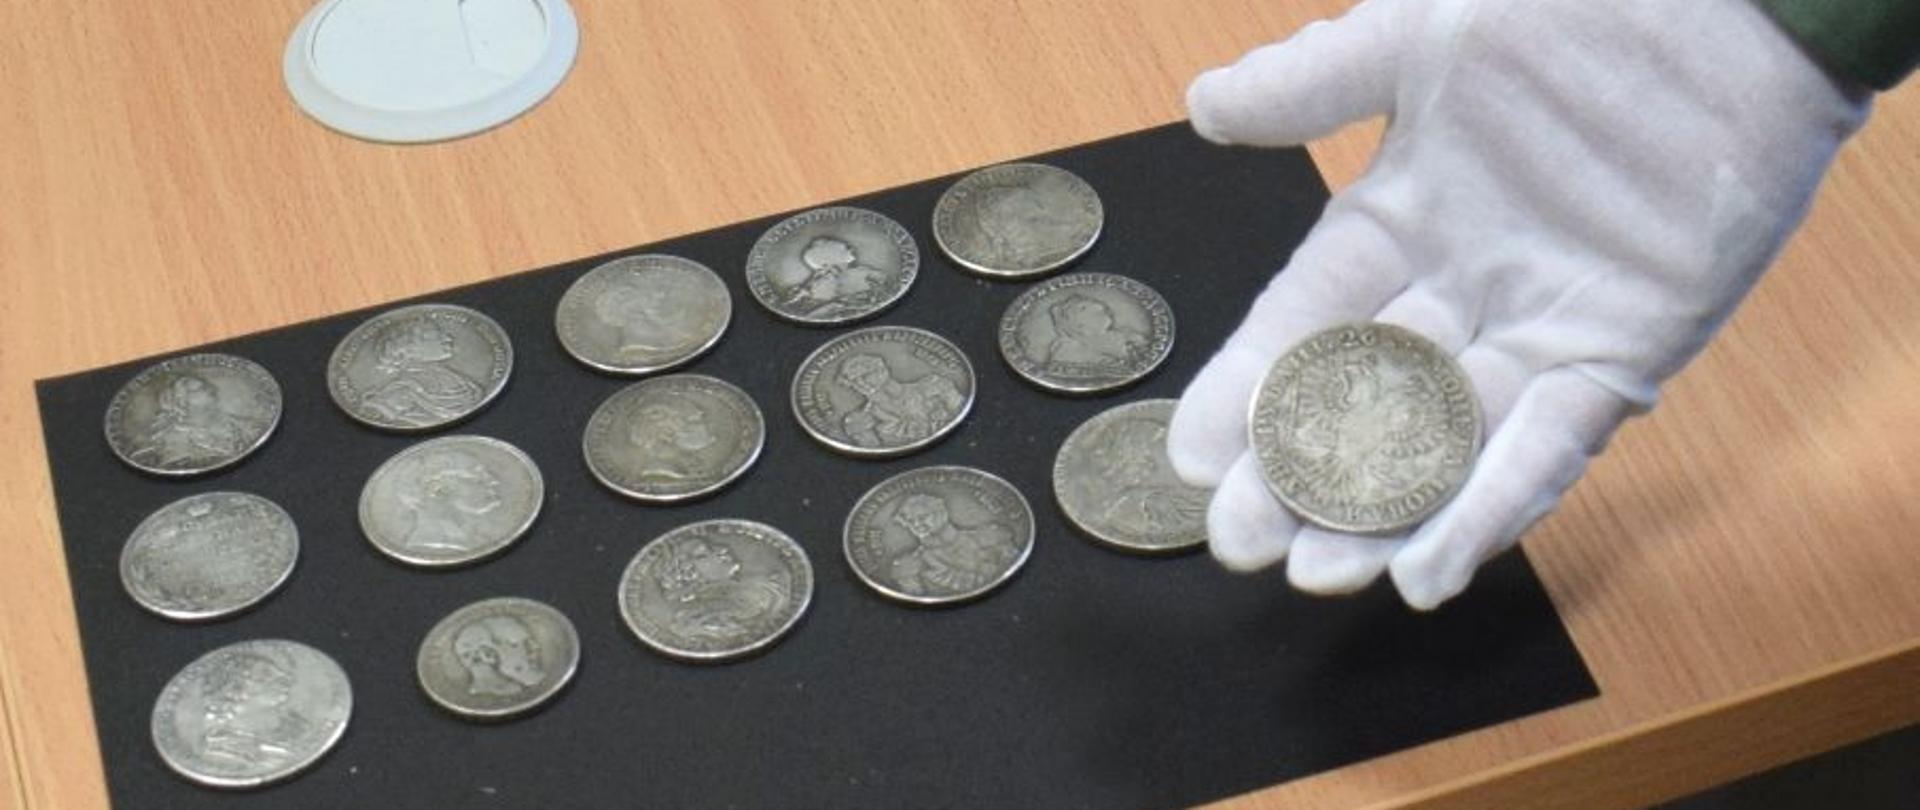 Monety rozłożone na stole, jedna na dłoni w rękawiczce.